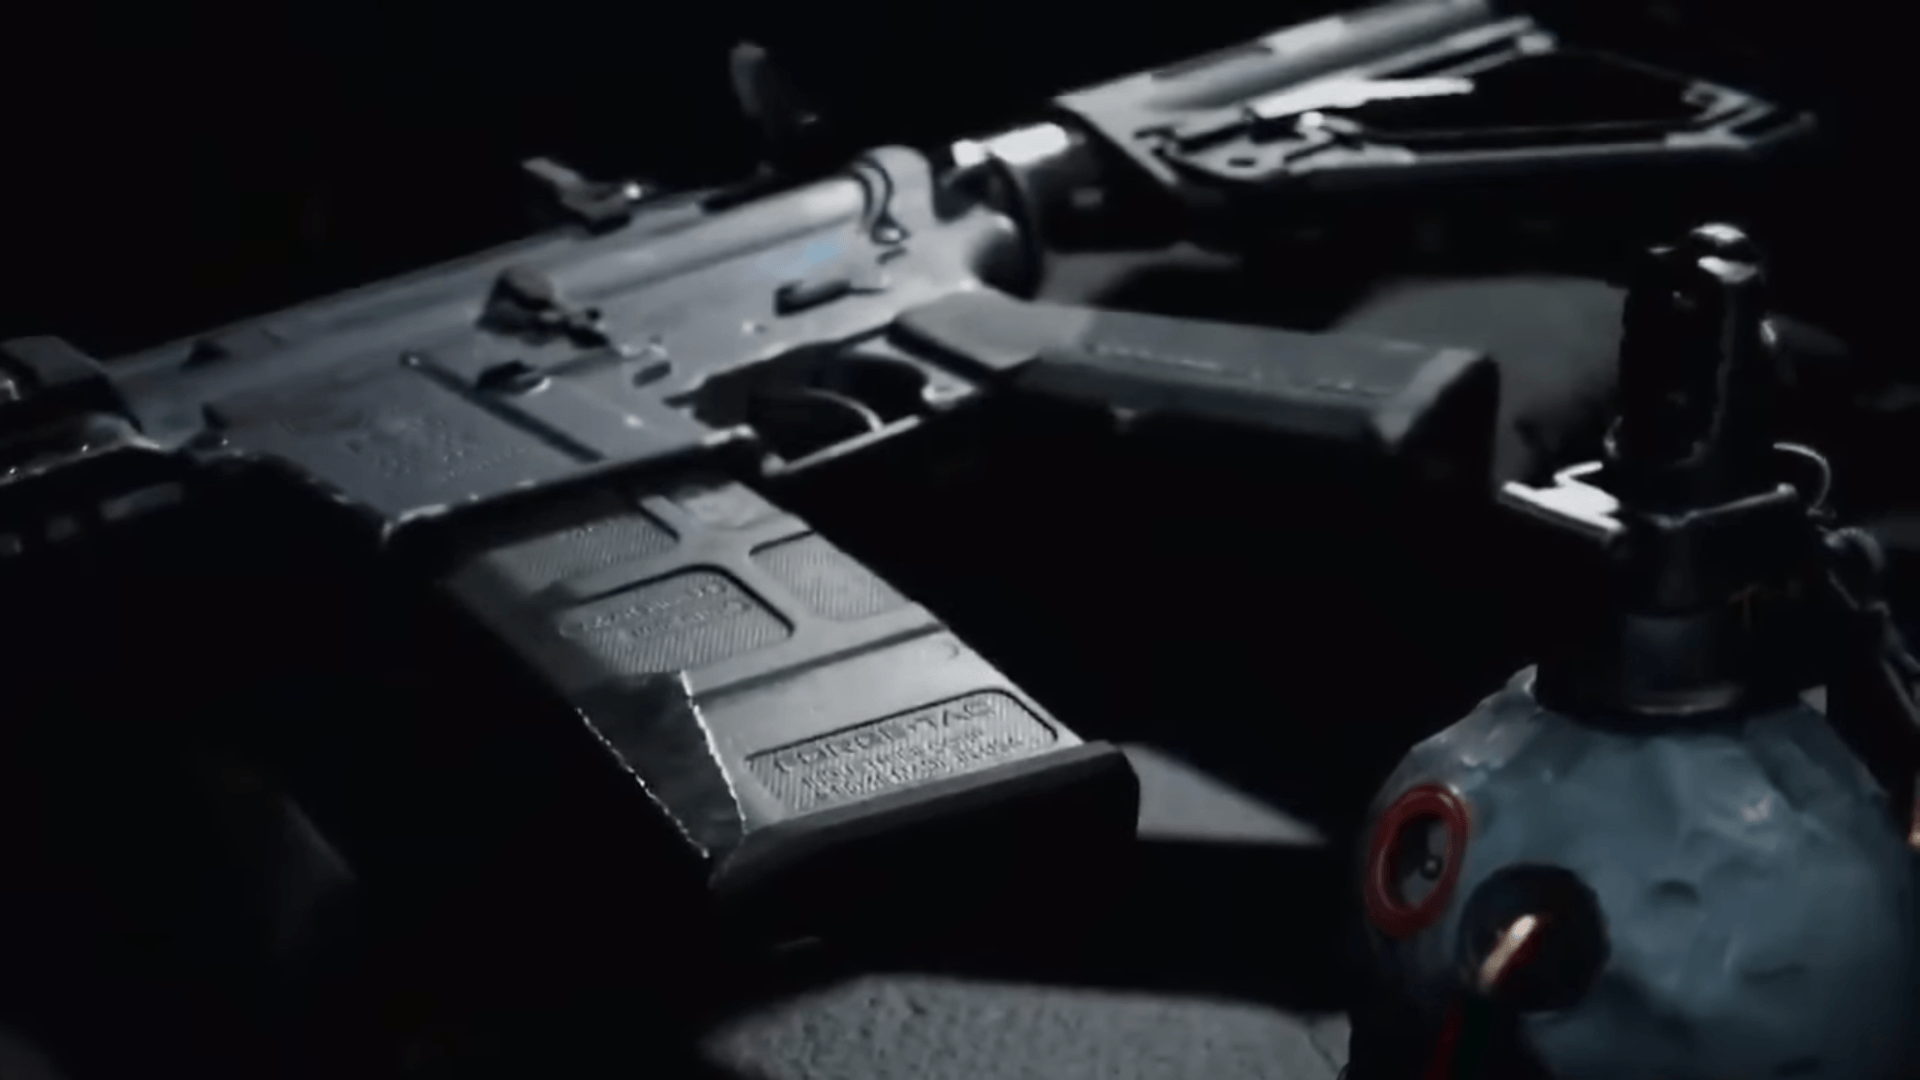 Call of Duty Modern Warfare 2019: Gunsmith, Weapons